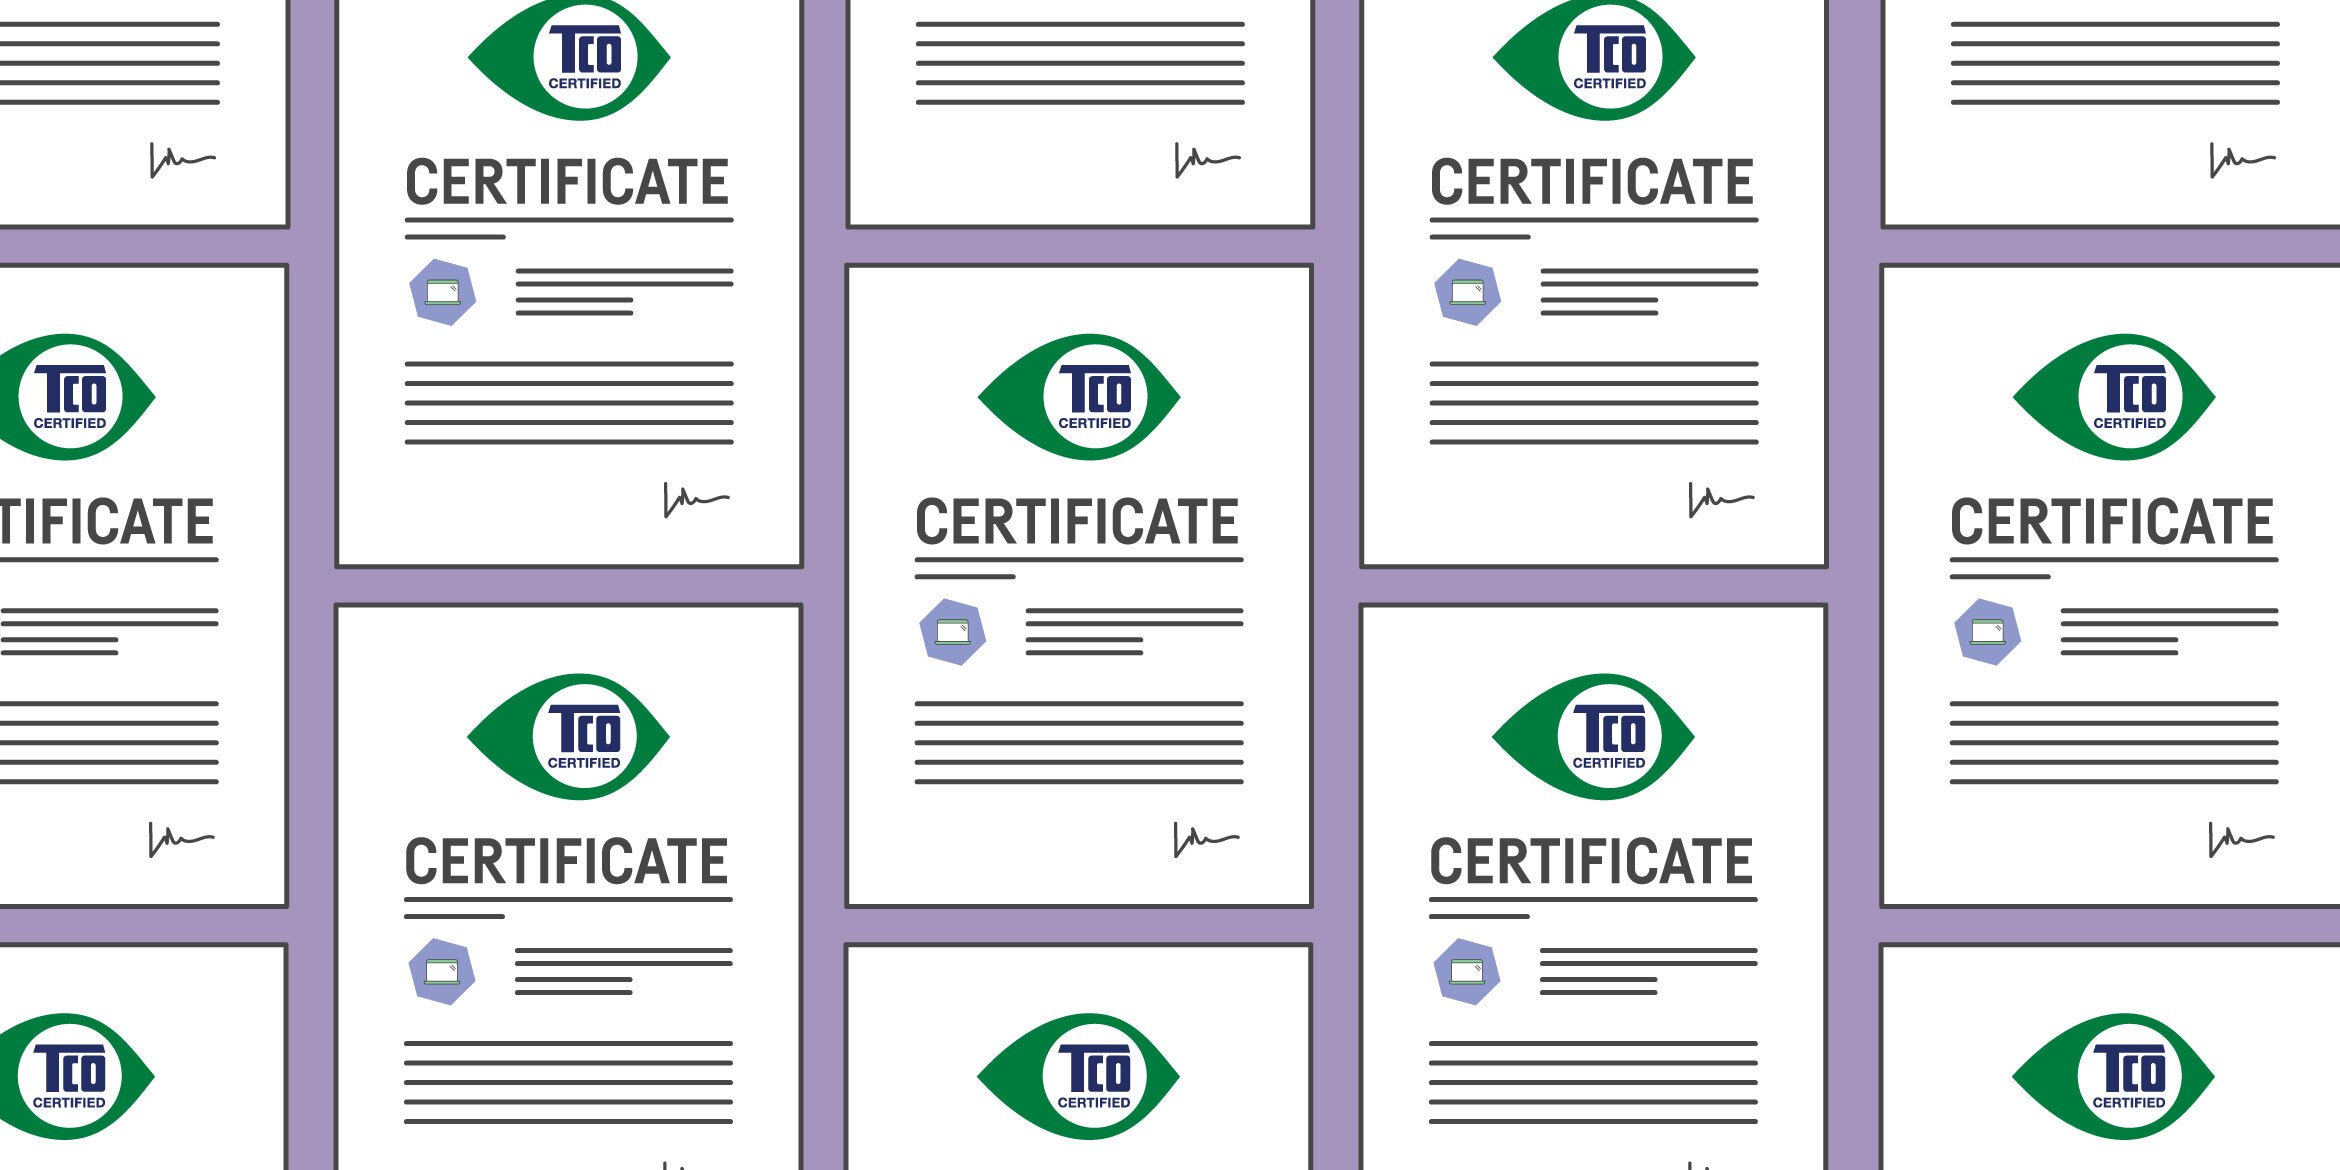 Aviso a los compradores: es hora de comprobar que los certificados siguen activos